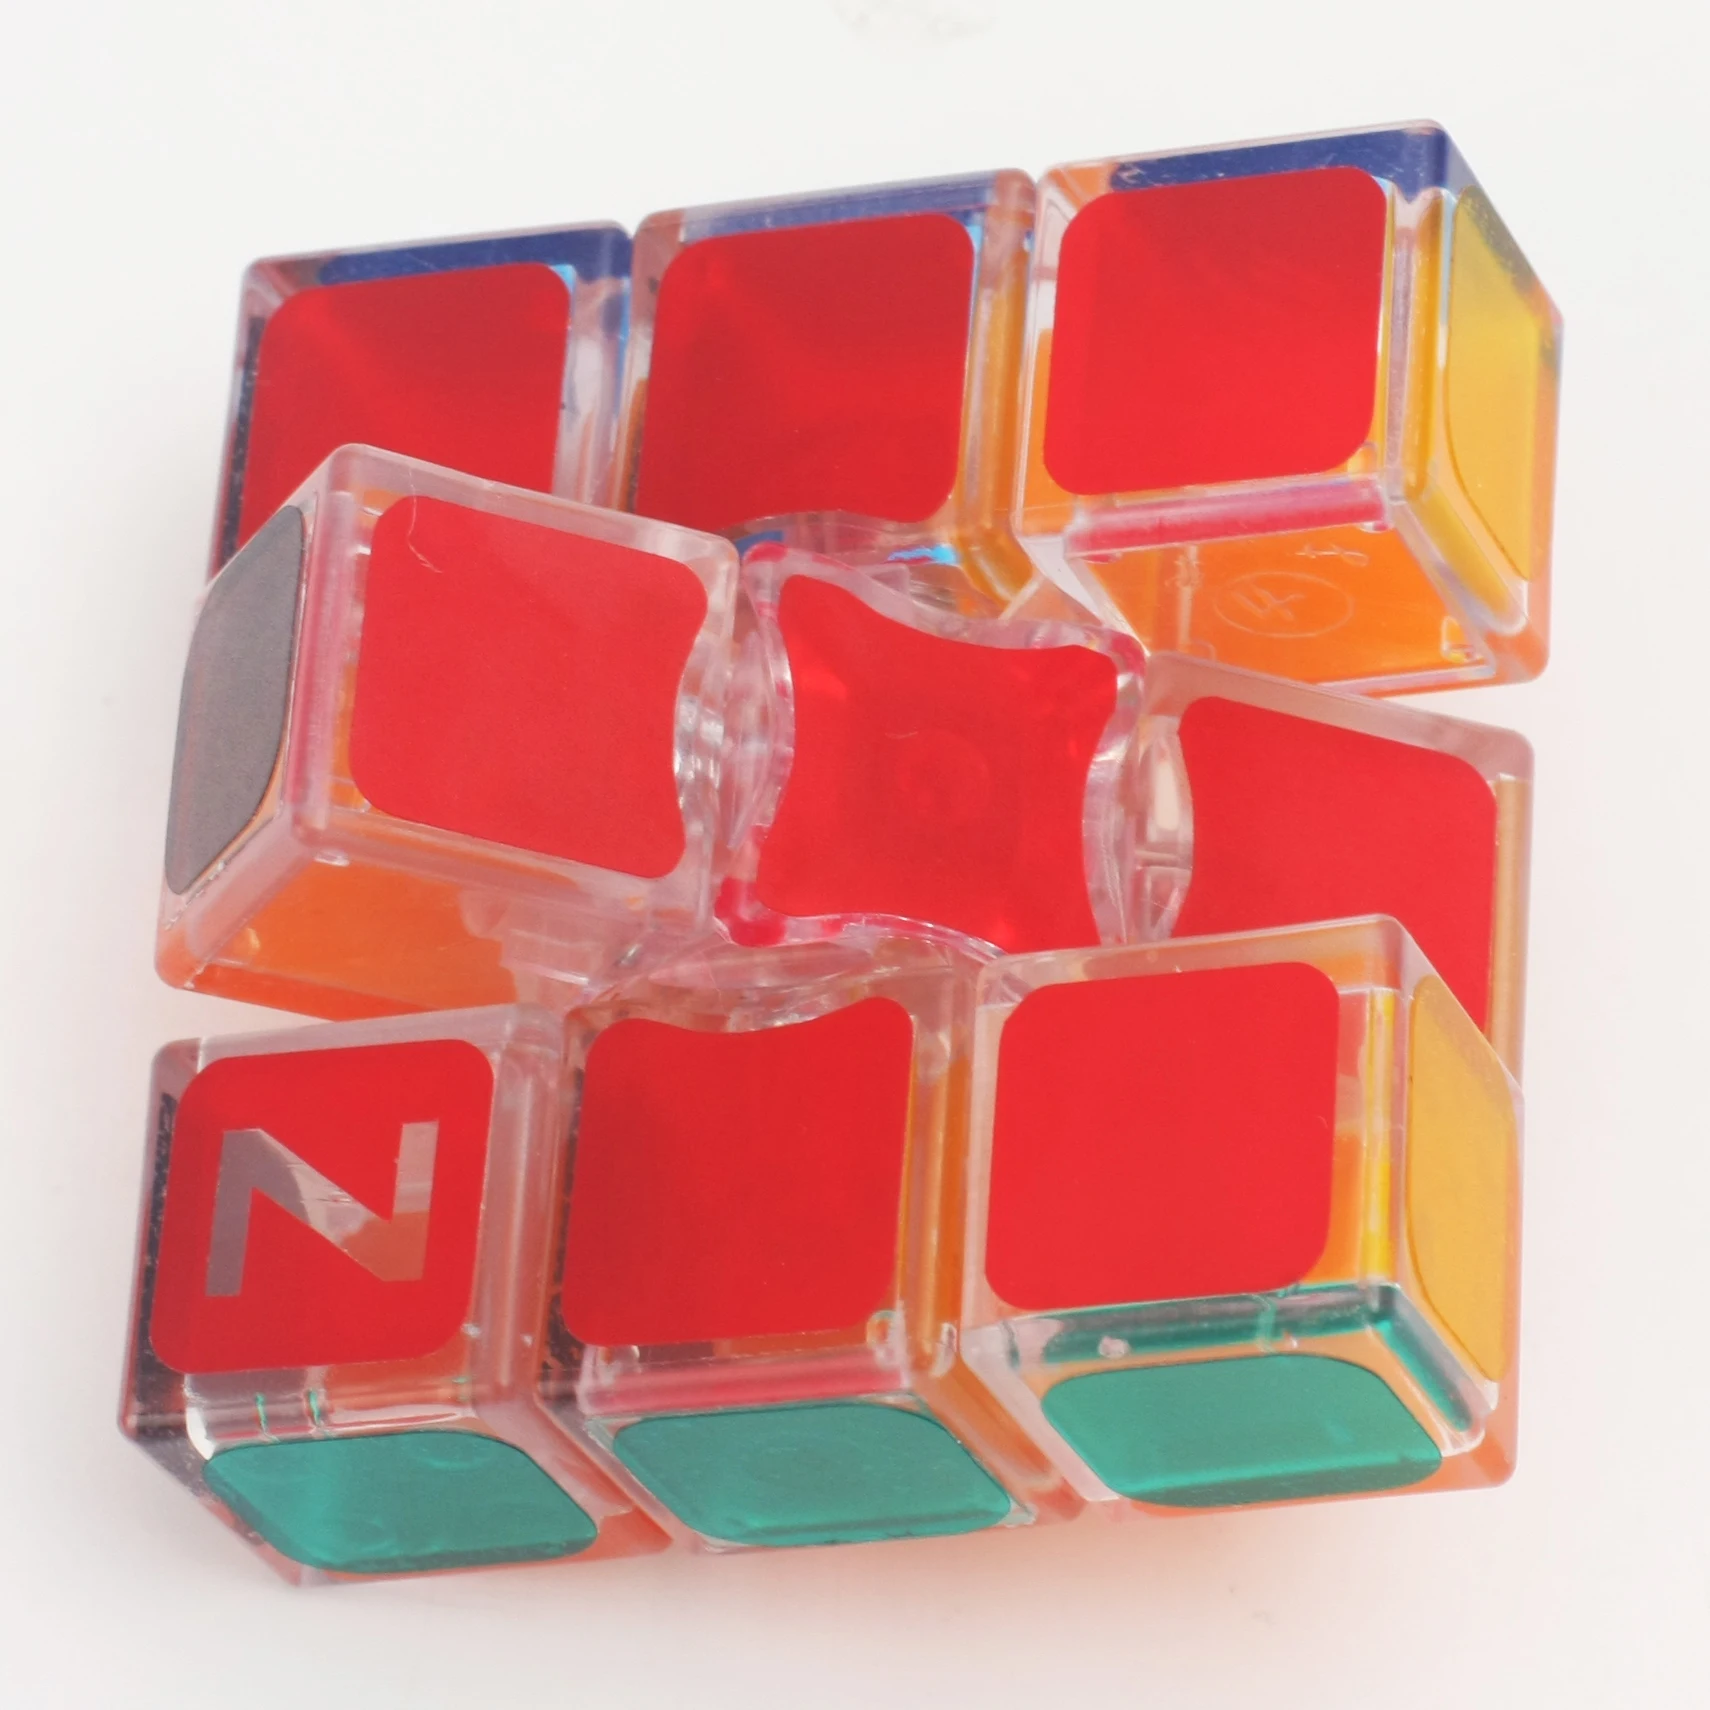 Cubo mágico 3x3, 2x2, pirâmide triangular suave, velocidade profissional,  brinquedos educativos, presentes para crianças